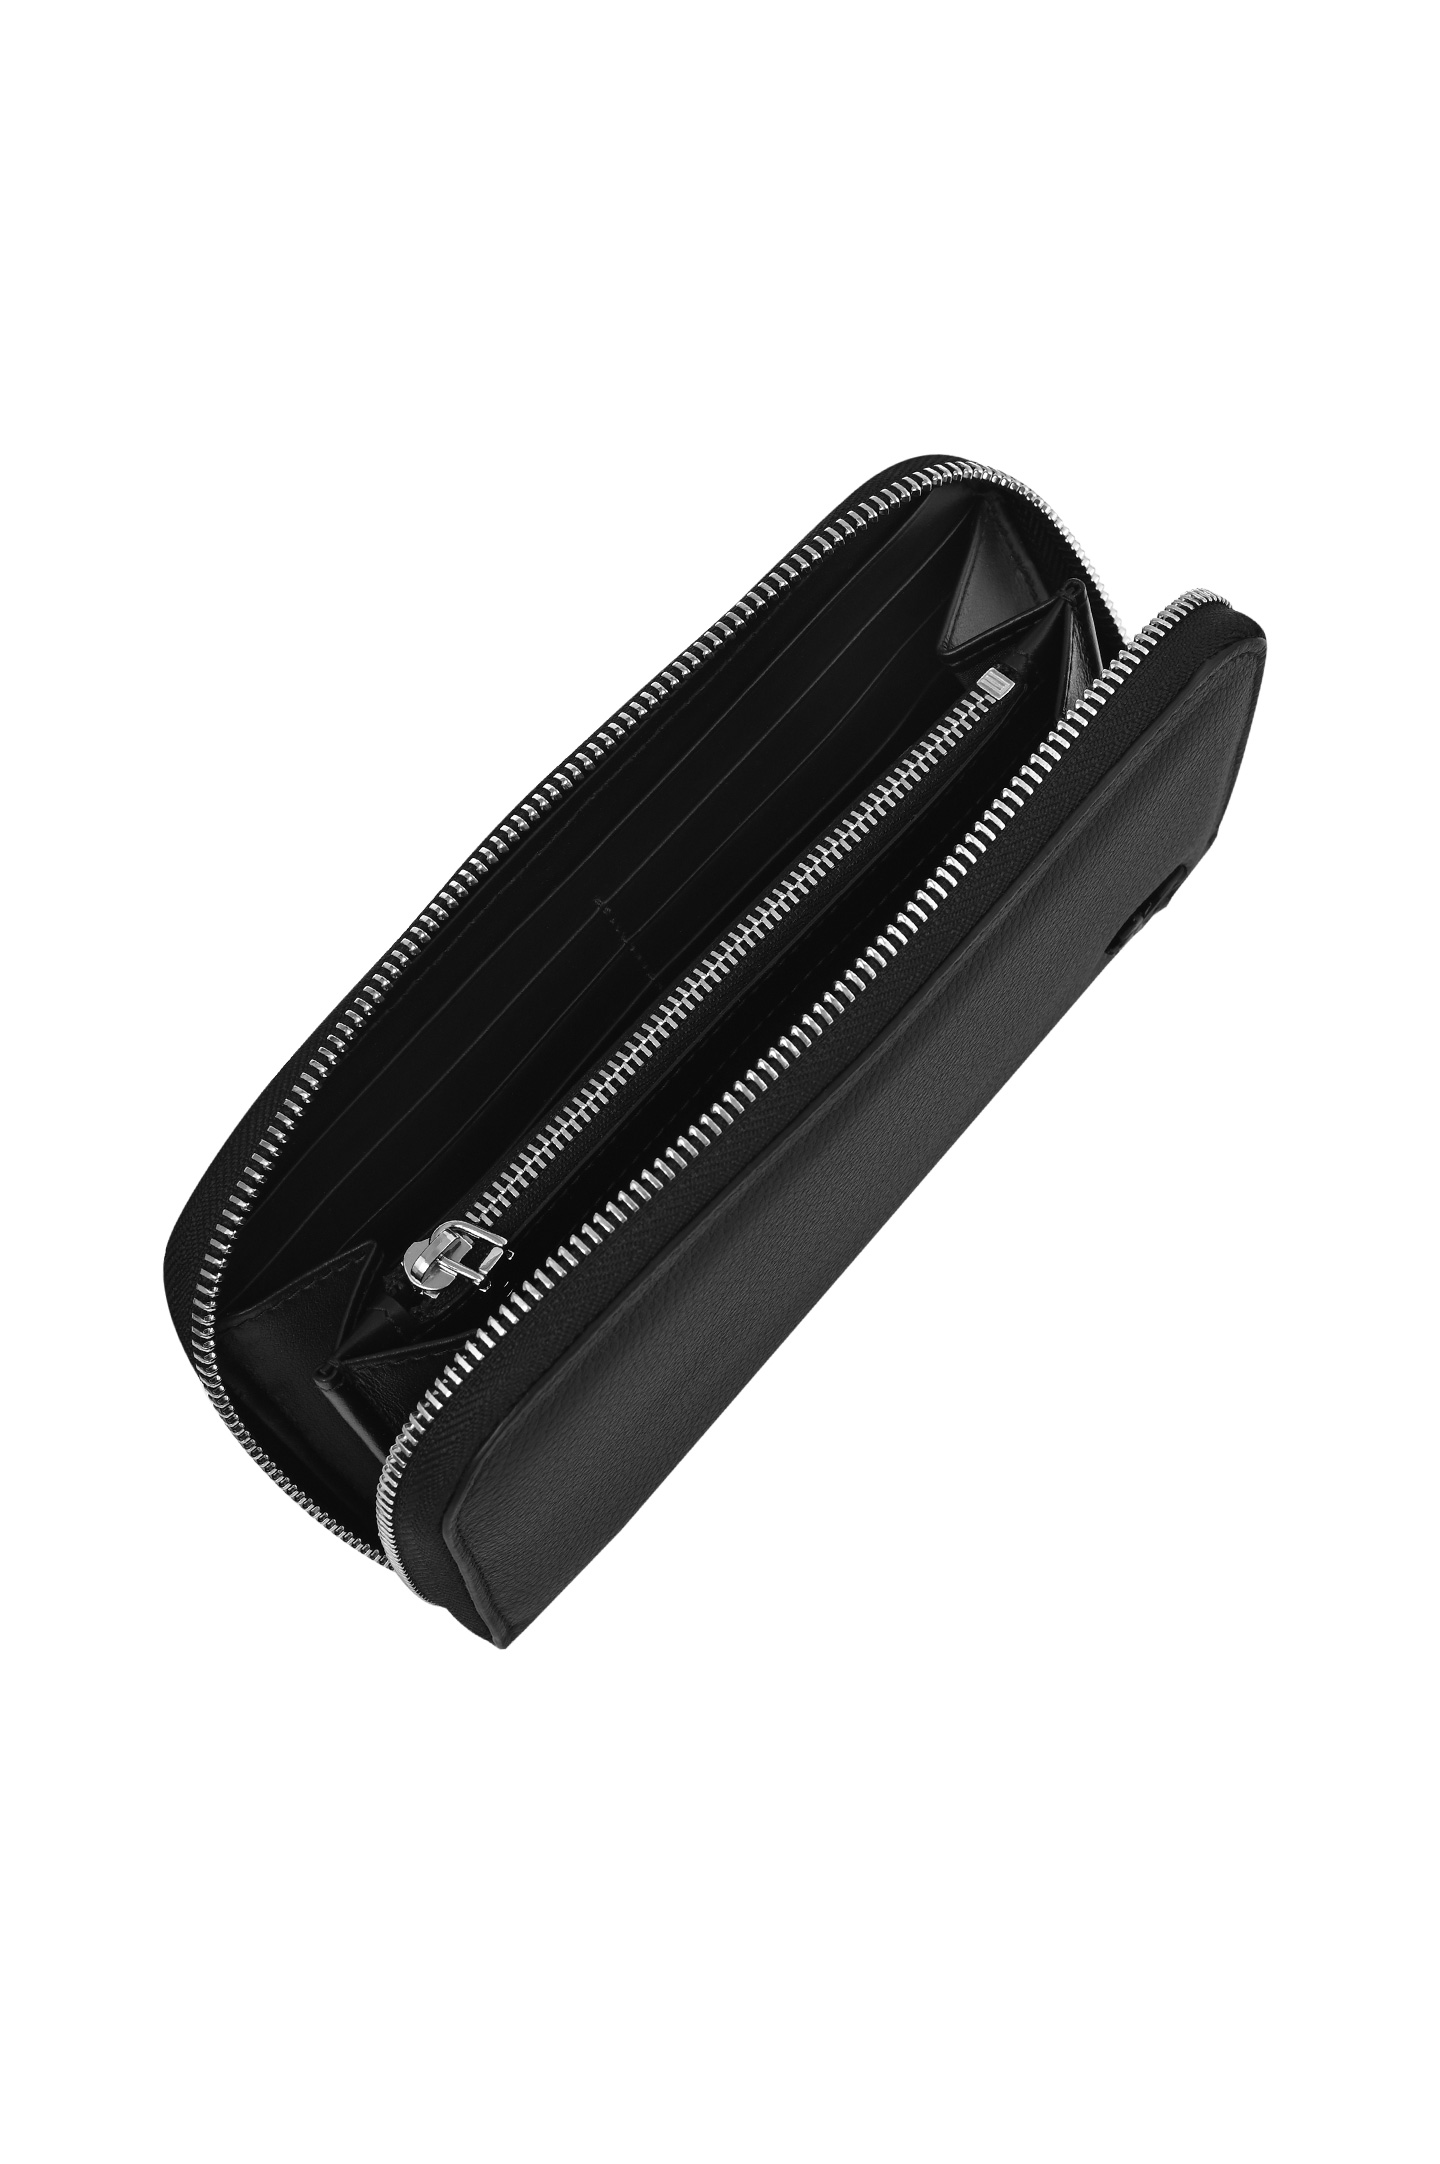 Кожаный кошелек ETRO MP2D0003 AU015, цвет: Черный, Мужской